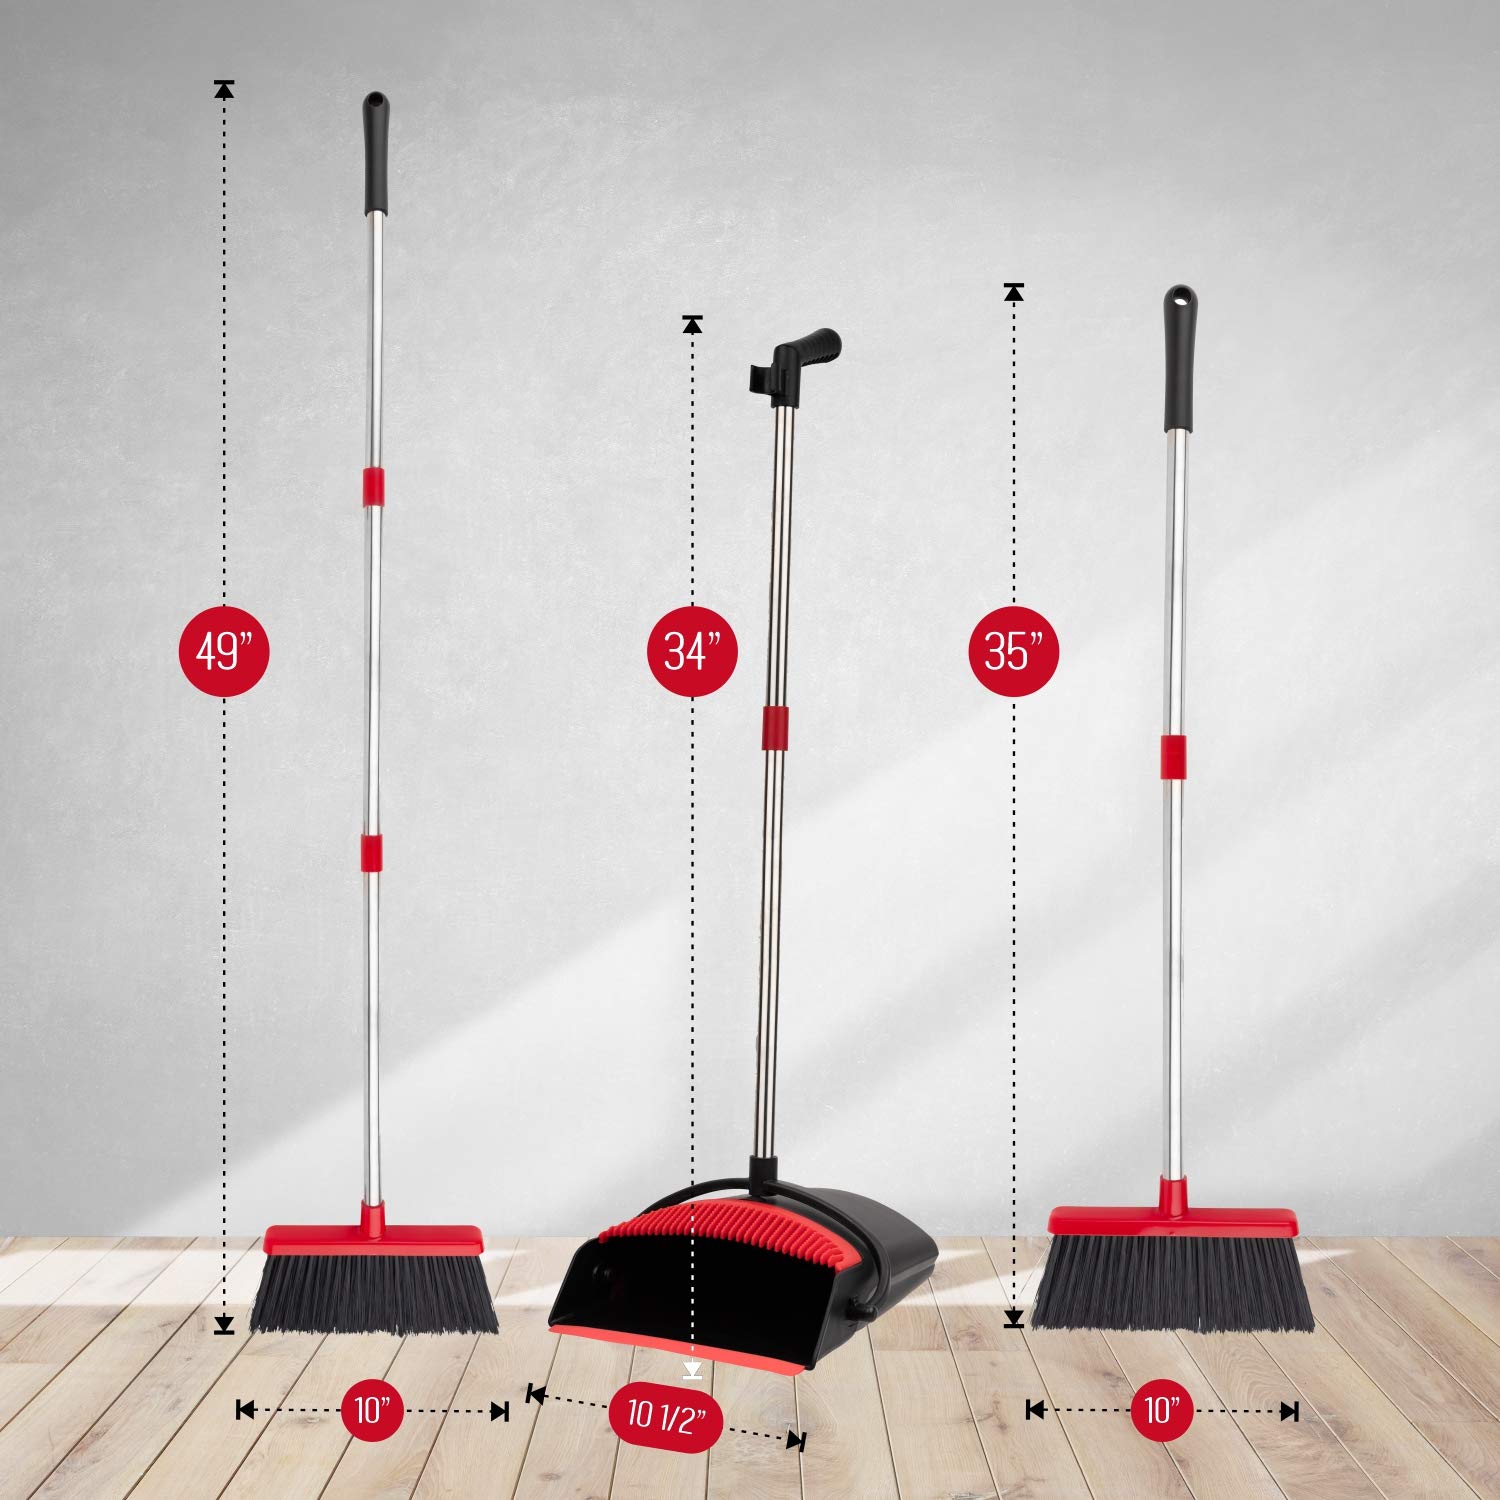 Smart Design Dustpan Broom Set - Non-Slip Comfort Grip Handle - Standing Upright